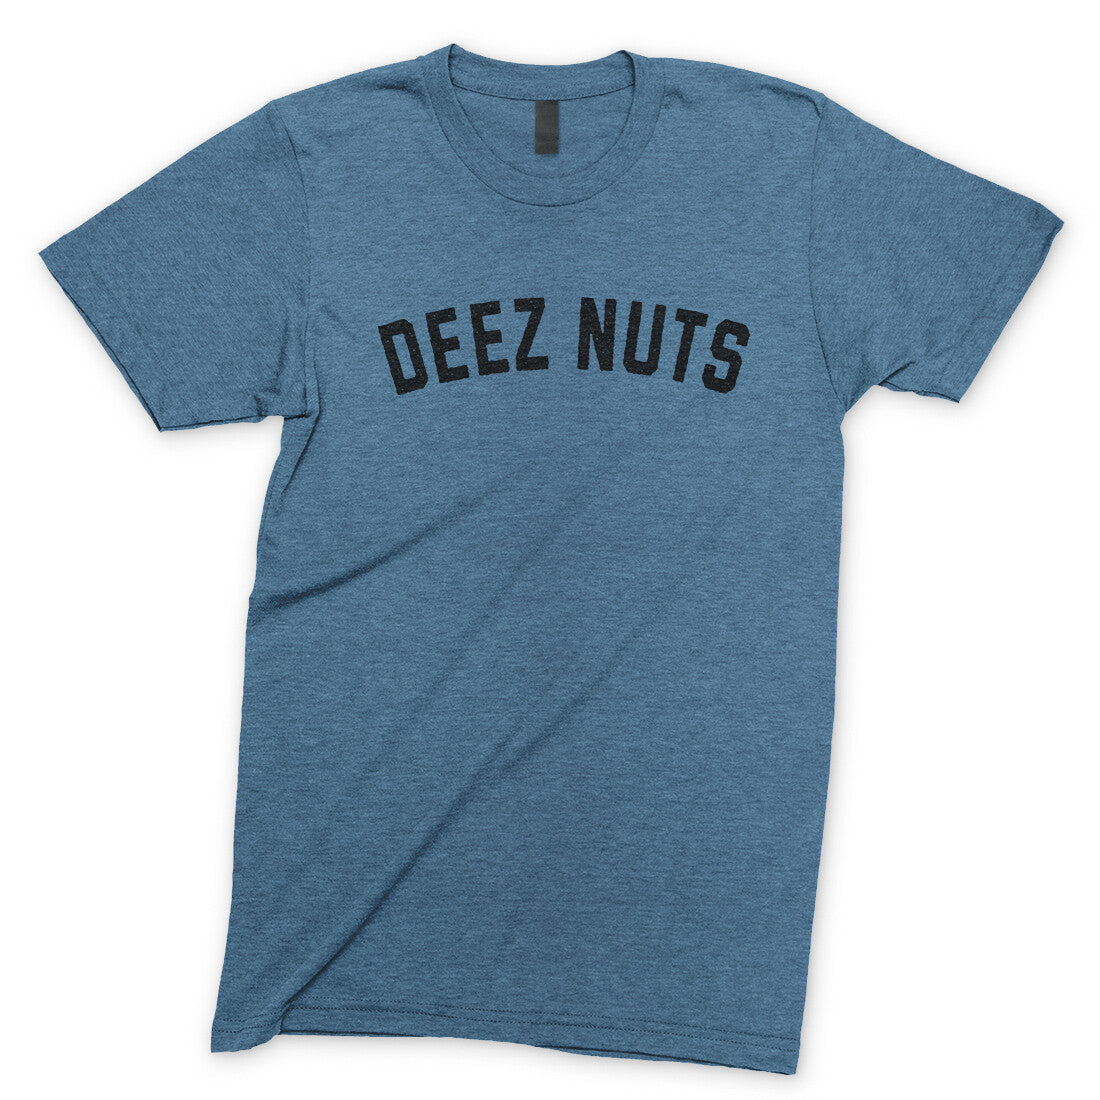 Deez Nuts in Heather Indigo Color